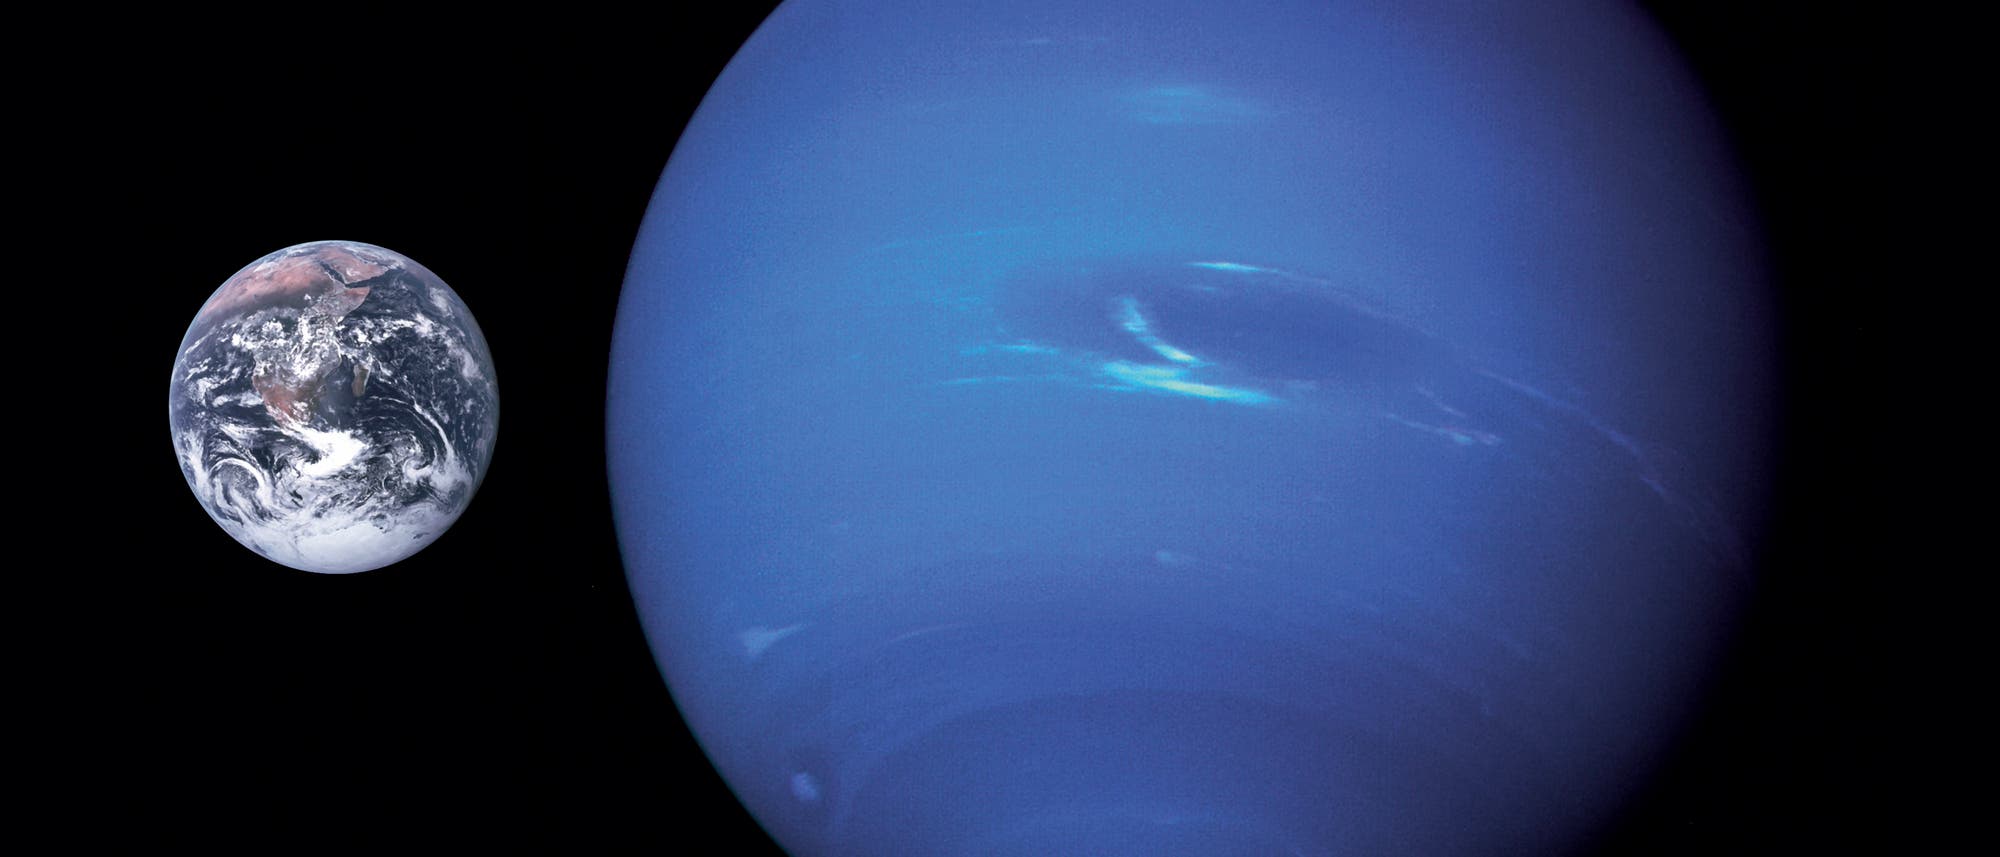 Zwei blaue Planeten im Vergleich: Neptuns Durchmesser ist rund viermal so groß wie derjenige der Erde.